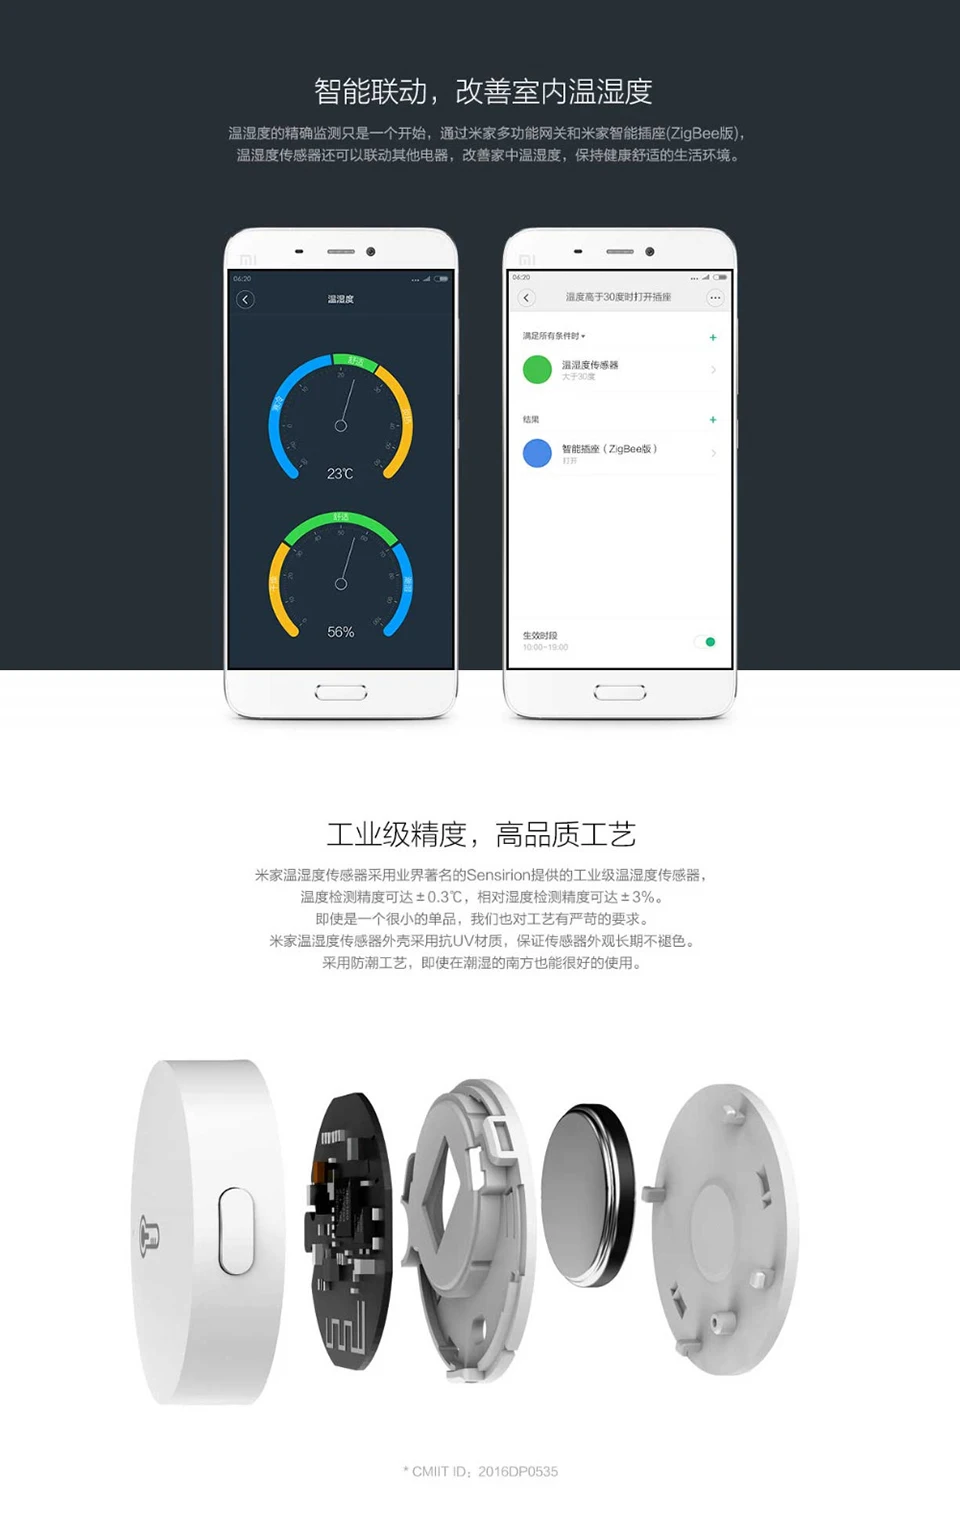 Xiaomi Mijia комплекты для умного дома шлюз 2 двери окна сенсор движения беспроводной переключатель Температура Влажность sebsorZigBee розетка